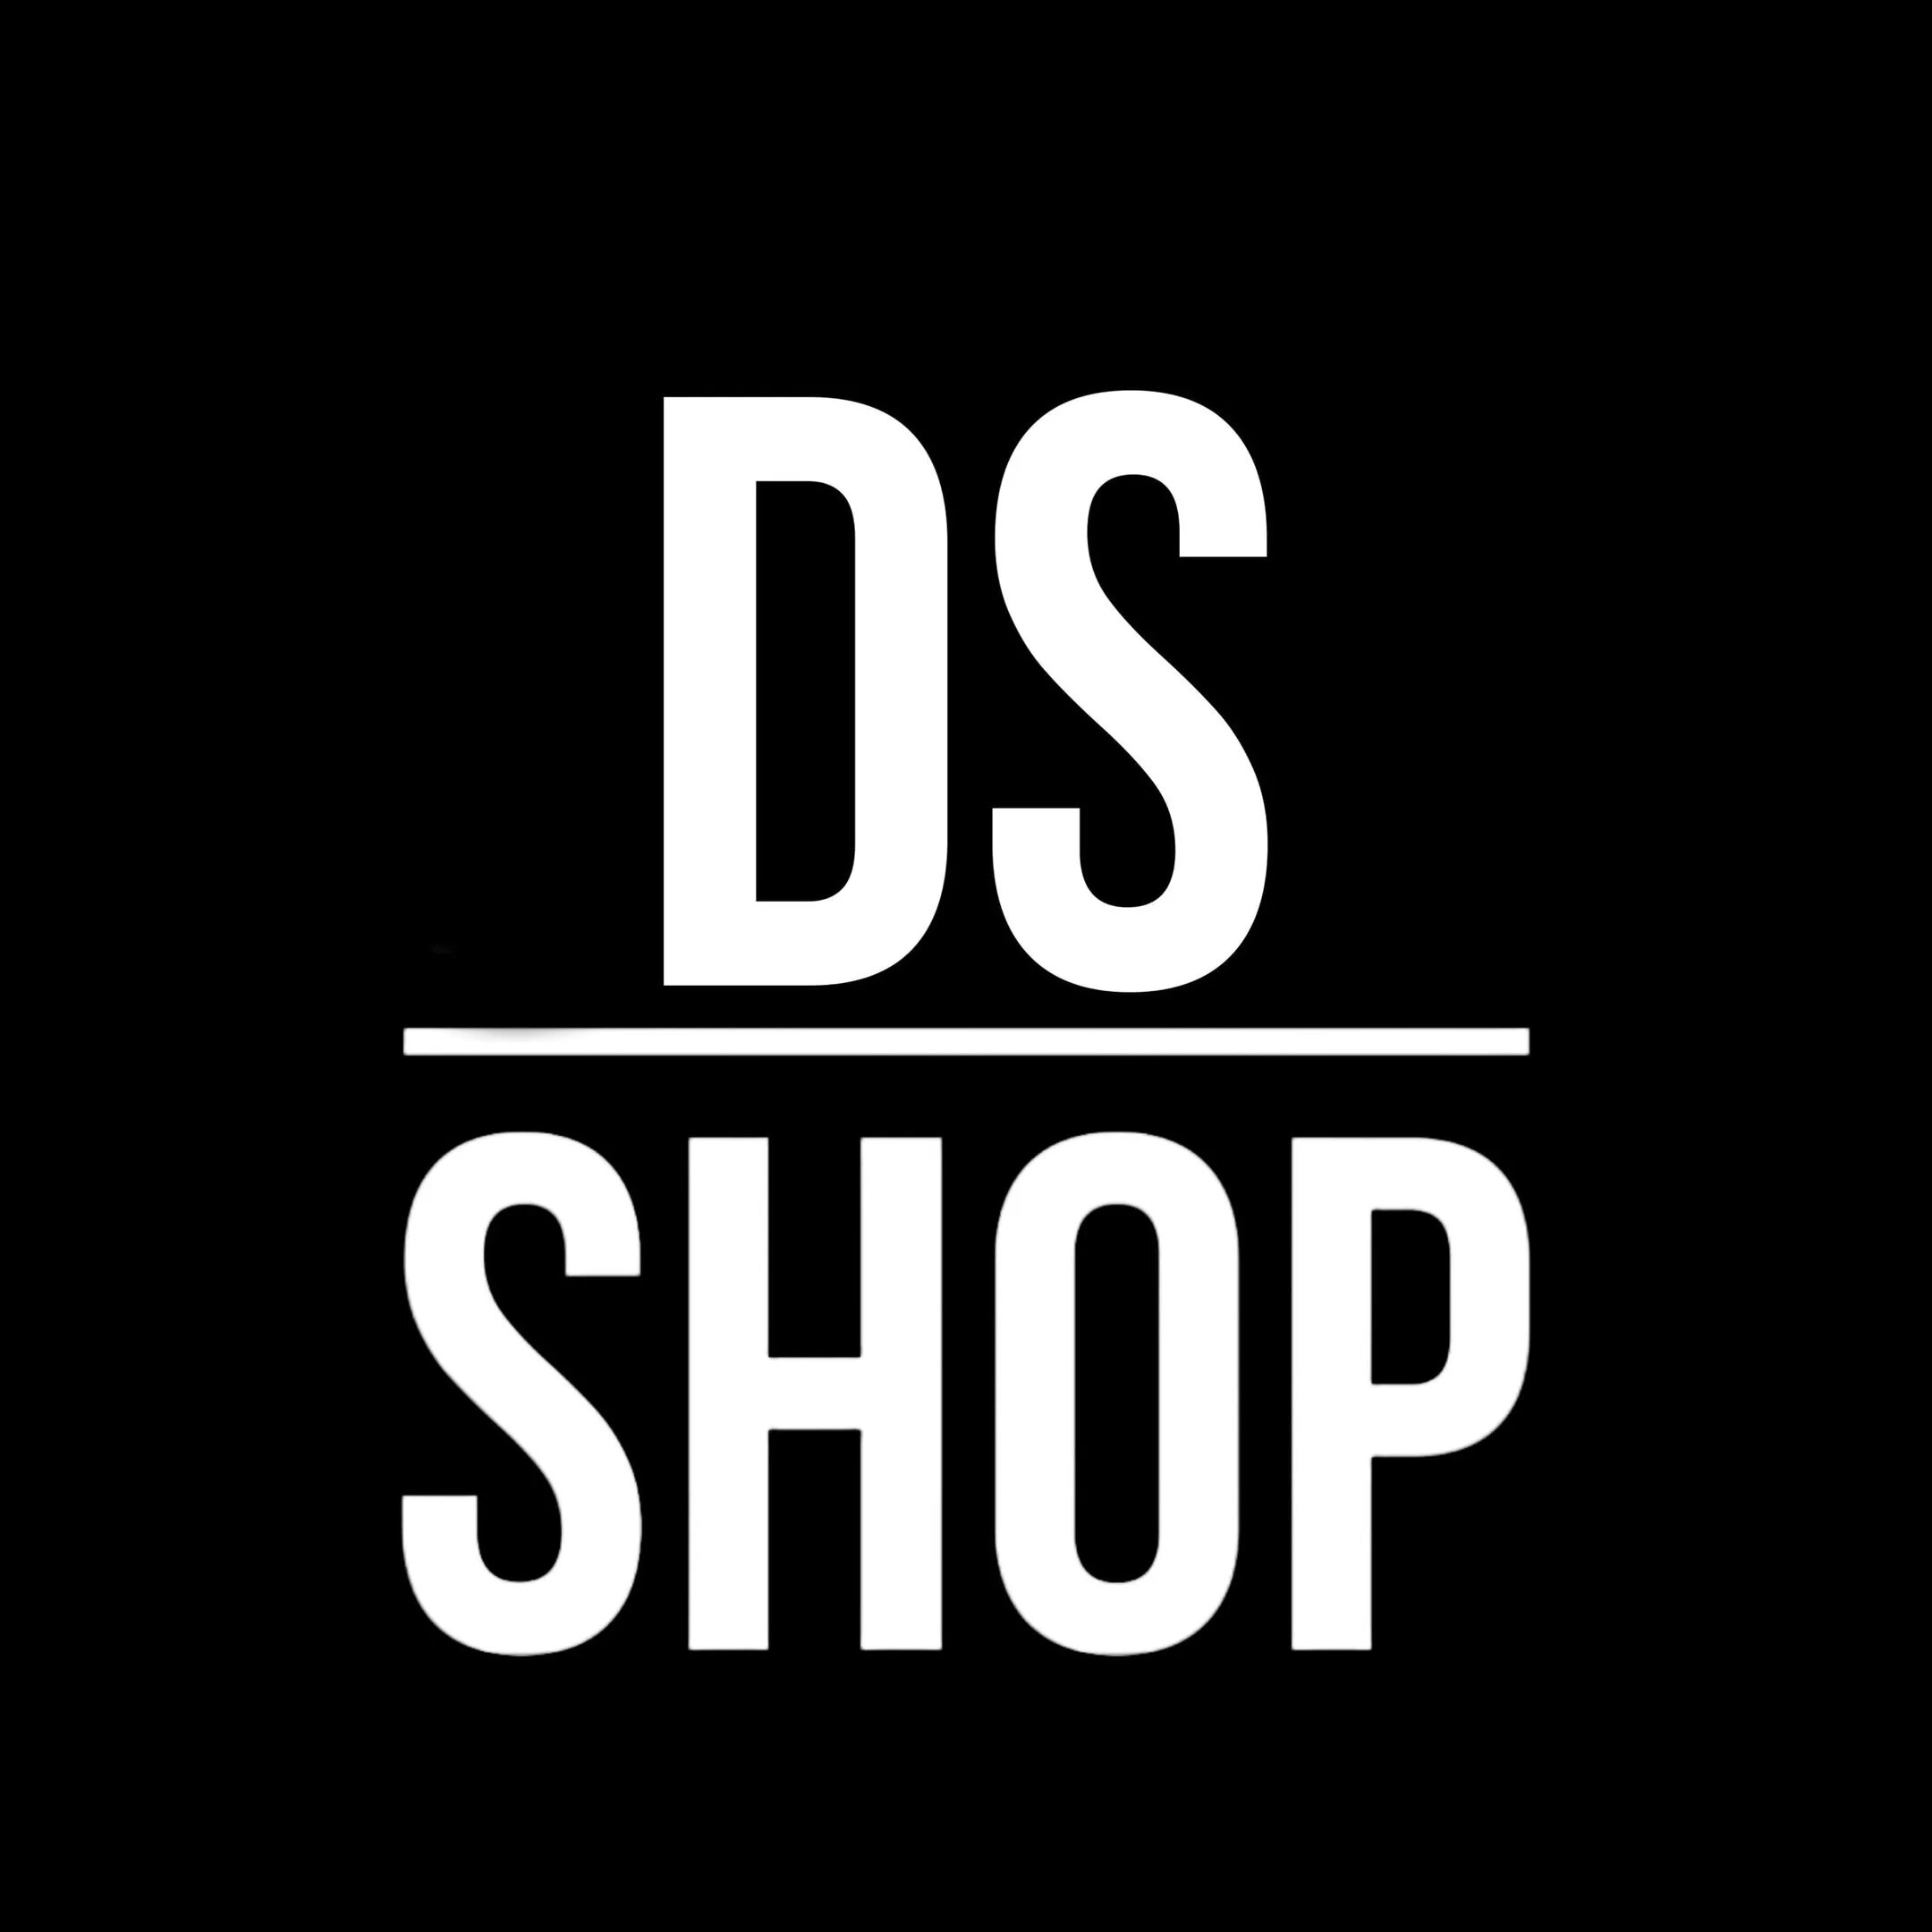 Shop ds ru. DS shop. Картинки ДС шоп. DS shop logo. Надпись shop для ДС анимированная.